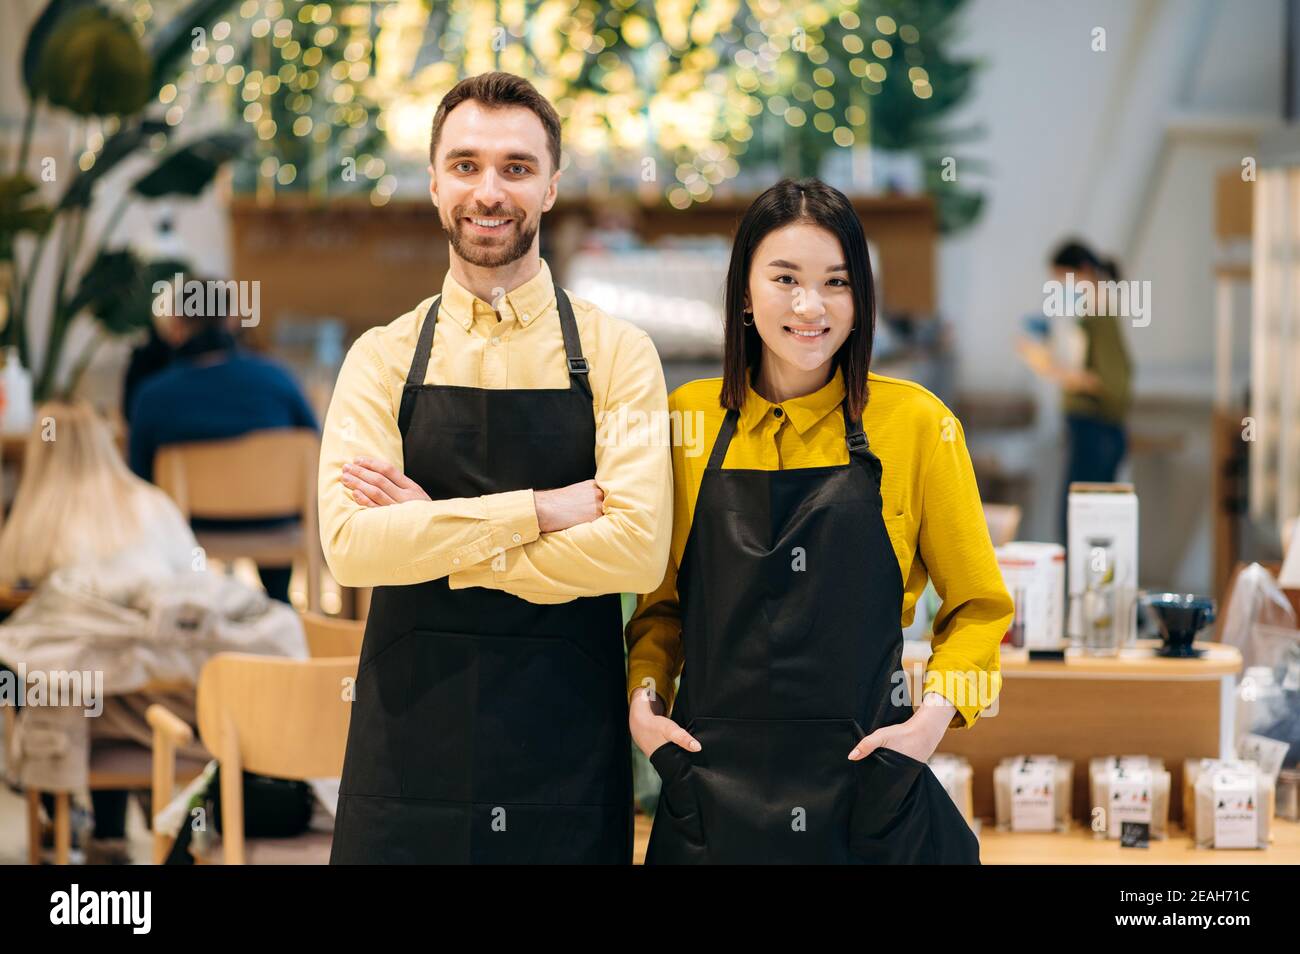 Teamarbeit. Porträt von zwei freundlichen Kellnern. Attraktive kaukasischen Kerl und schöne asiatische Mädchen in schwarzen Schürzen stehen in einem Restaurant, Café oder Bar und lächelnd Stockfoto